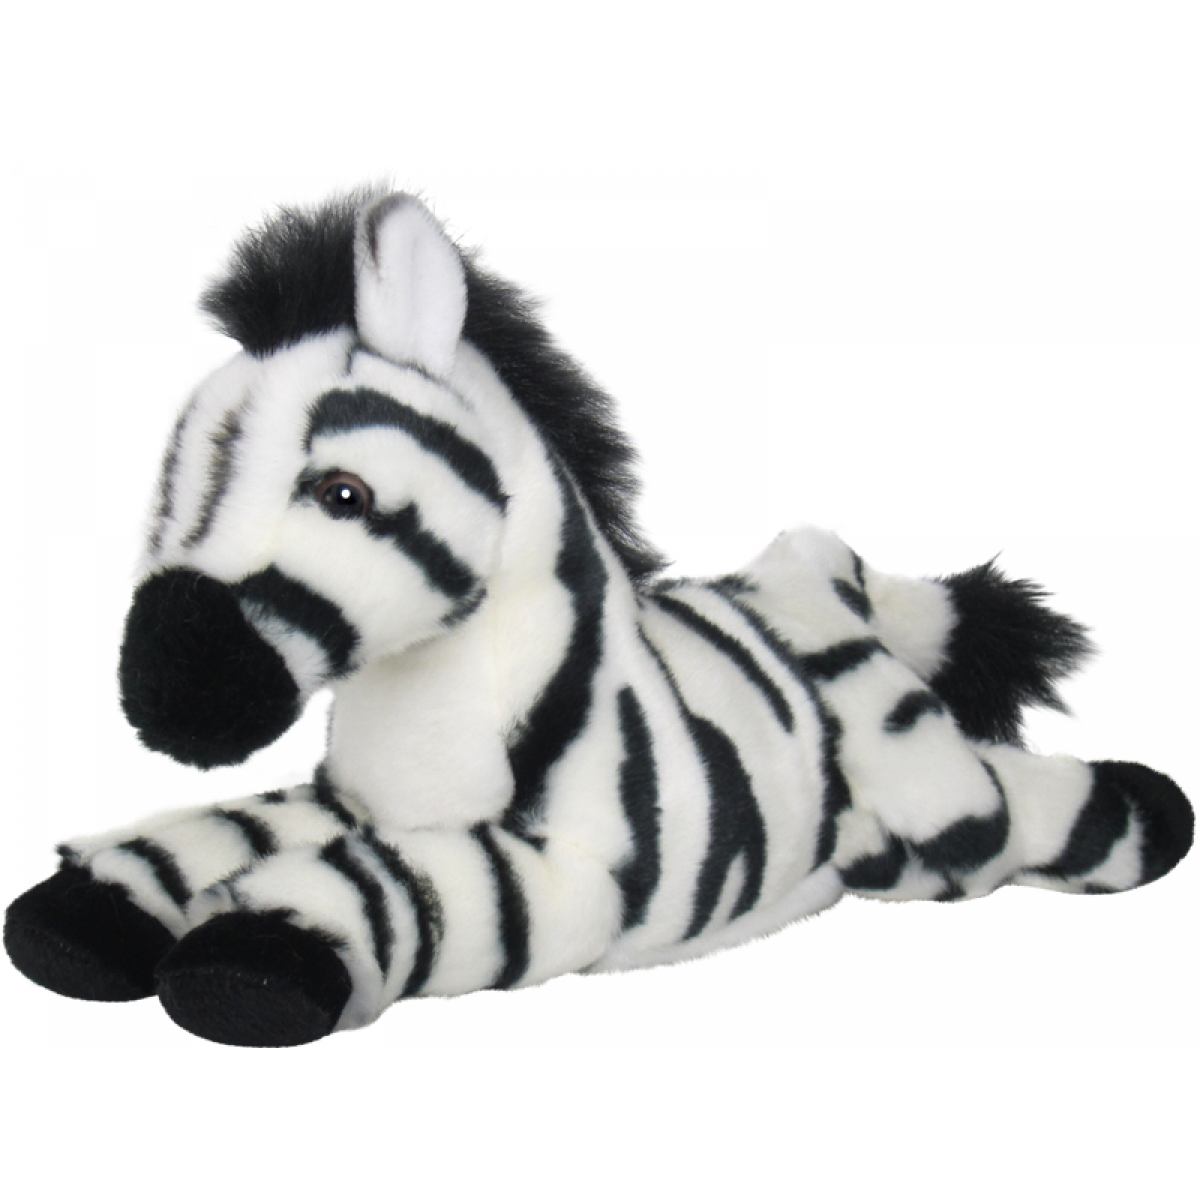 Zebra plyšová 25 cm